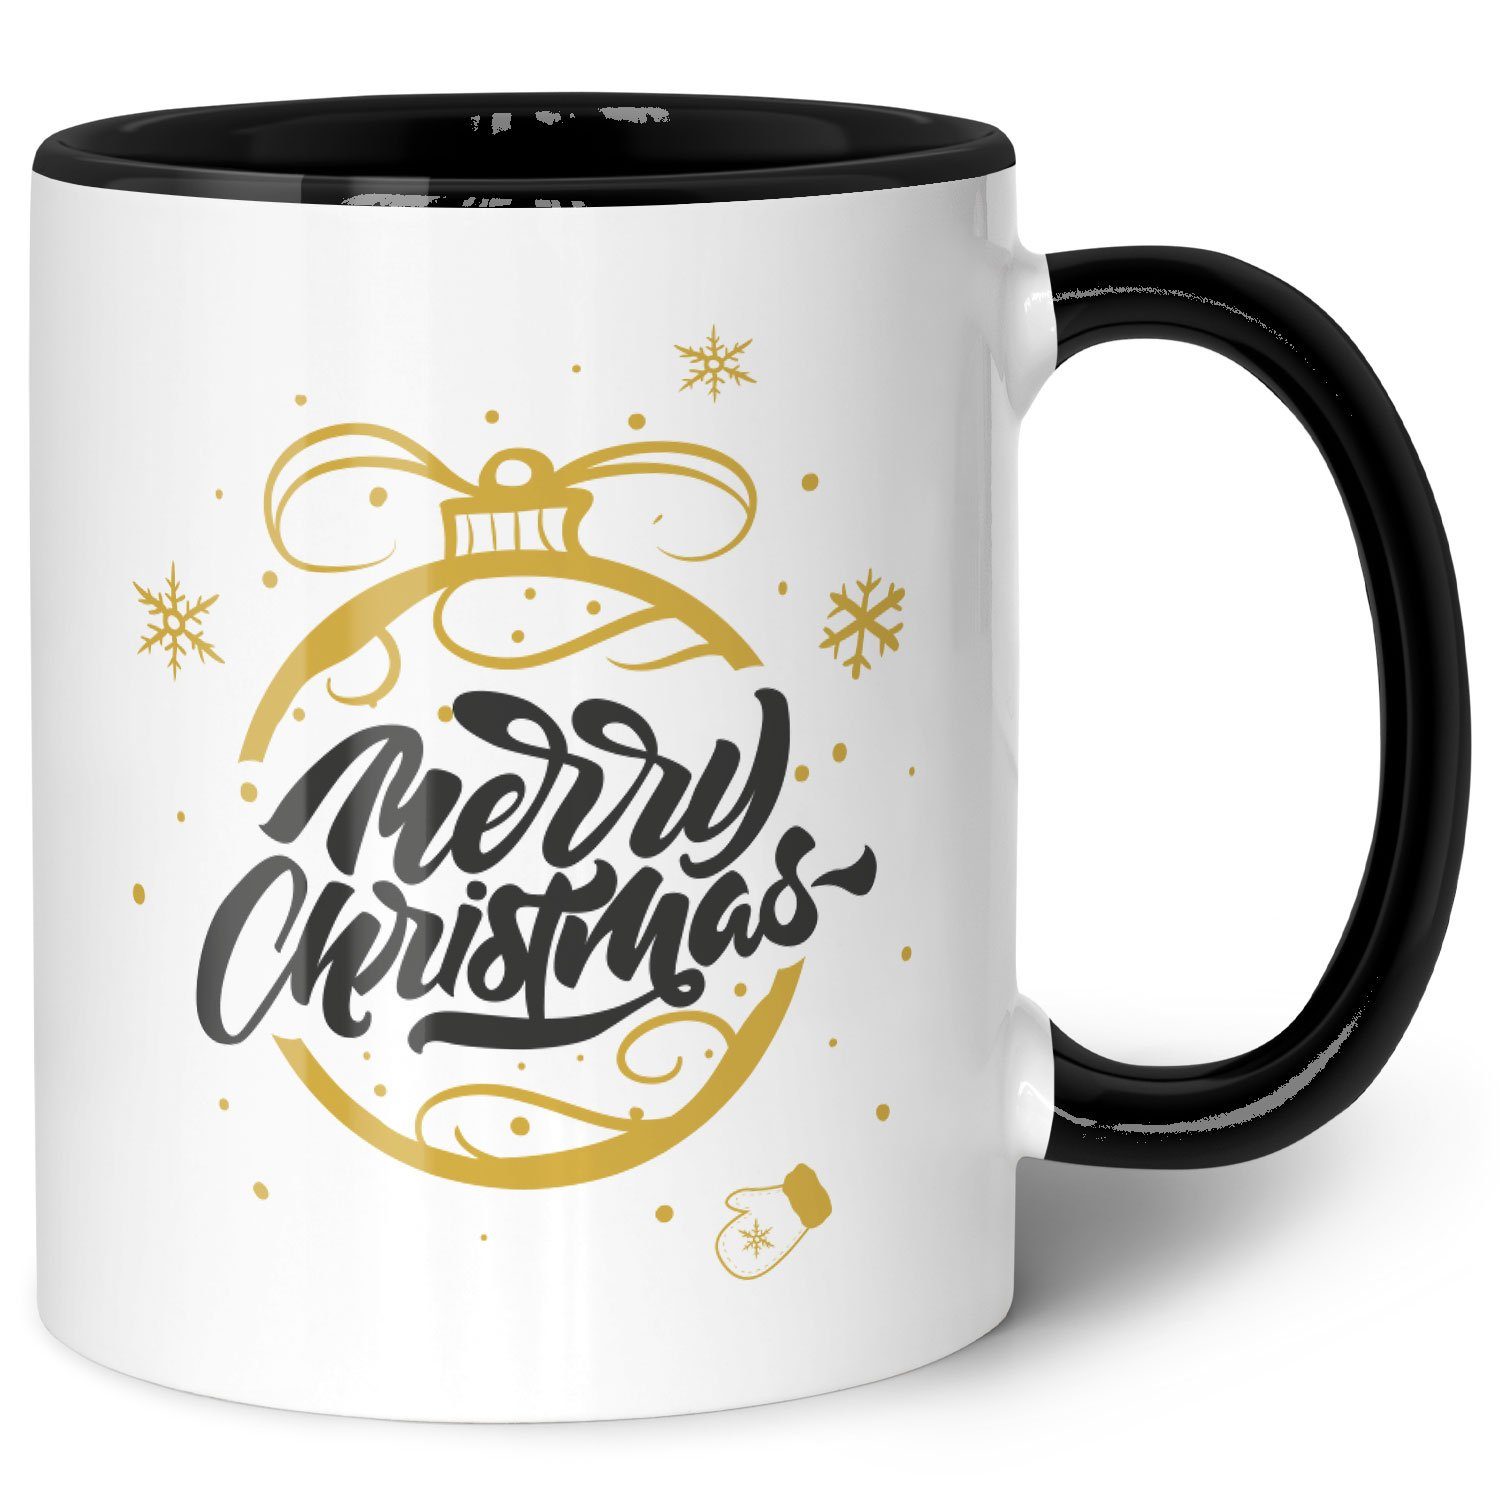 GRAVURZEILE Tasse mit Weihnachtsmotiv - Geschenke für Frauen & Männer zu Weihnachten, Spülmaschinenfest - Weihnachtskugel Gold - Schwarz und Weiß